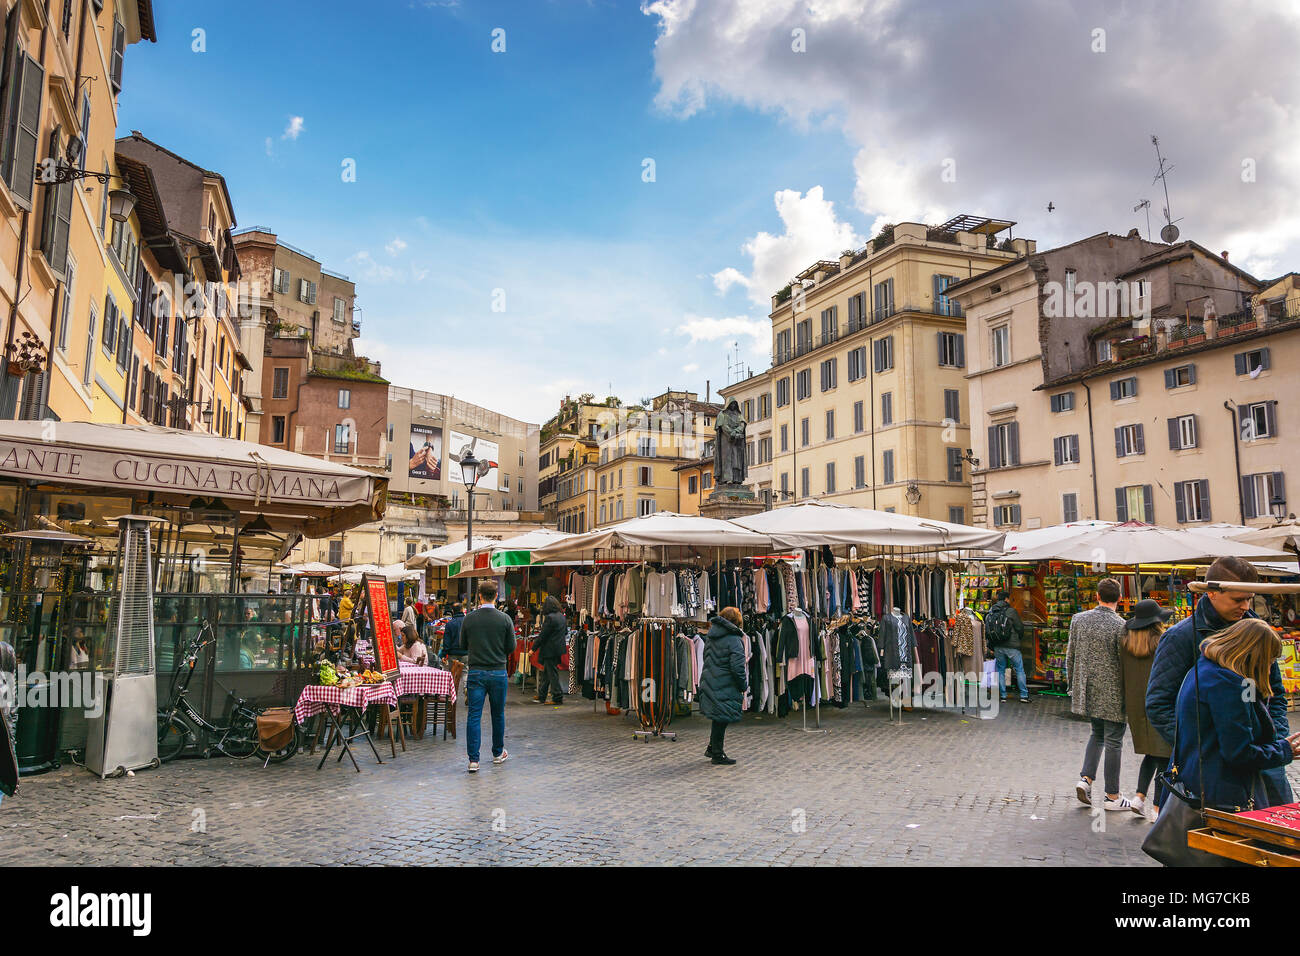 Roma, Italia, Febbraio 2017: : mercato con persone non identificate sul Campo de' Fiori a Roma.1869 il mercato dei fiori della famosa Piazza Navona era rel Foto Stock